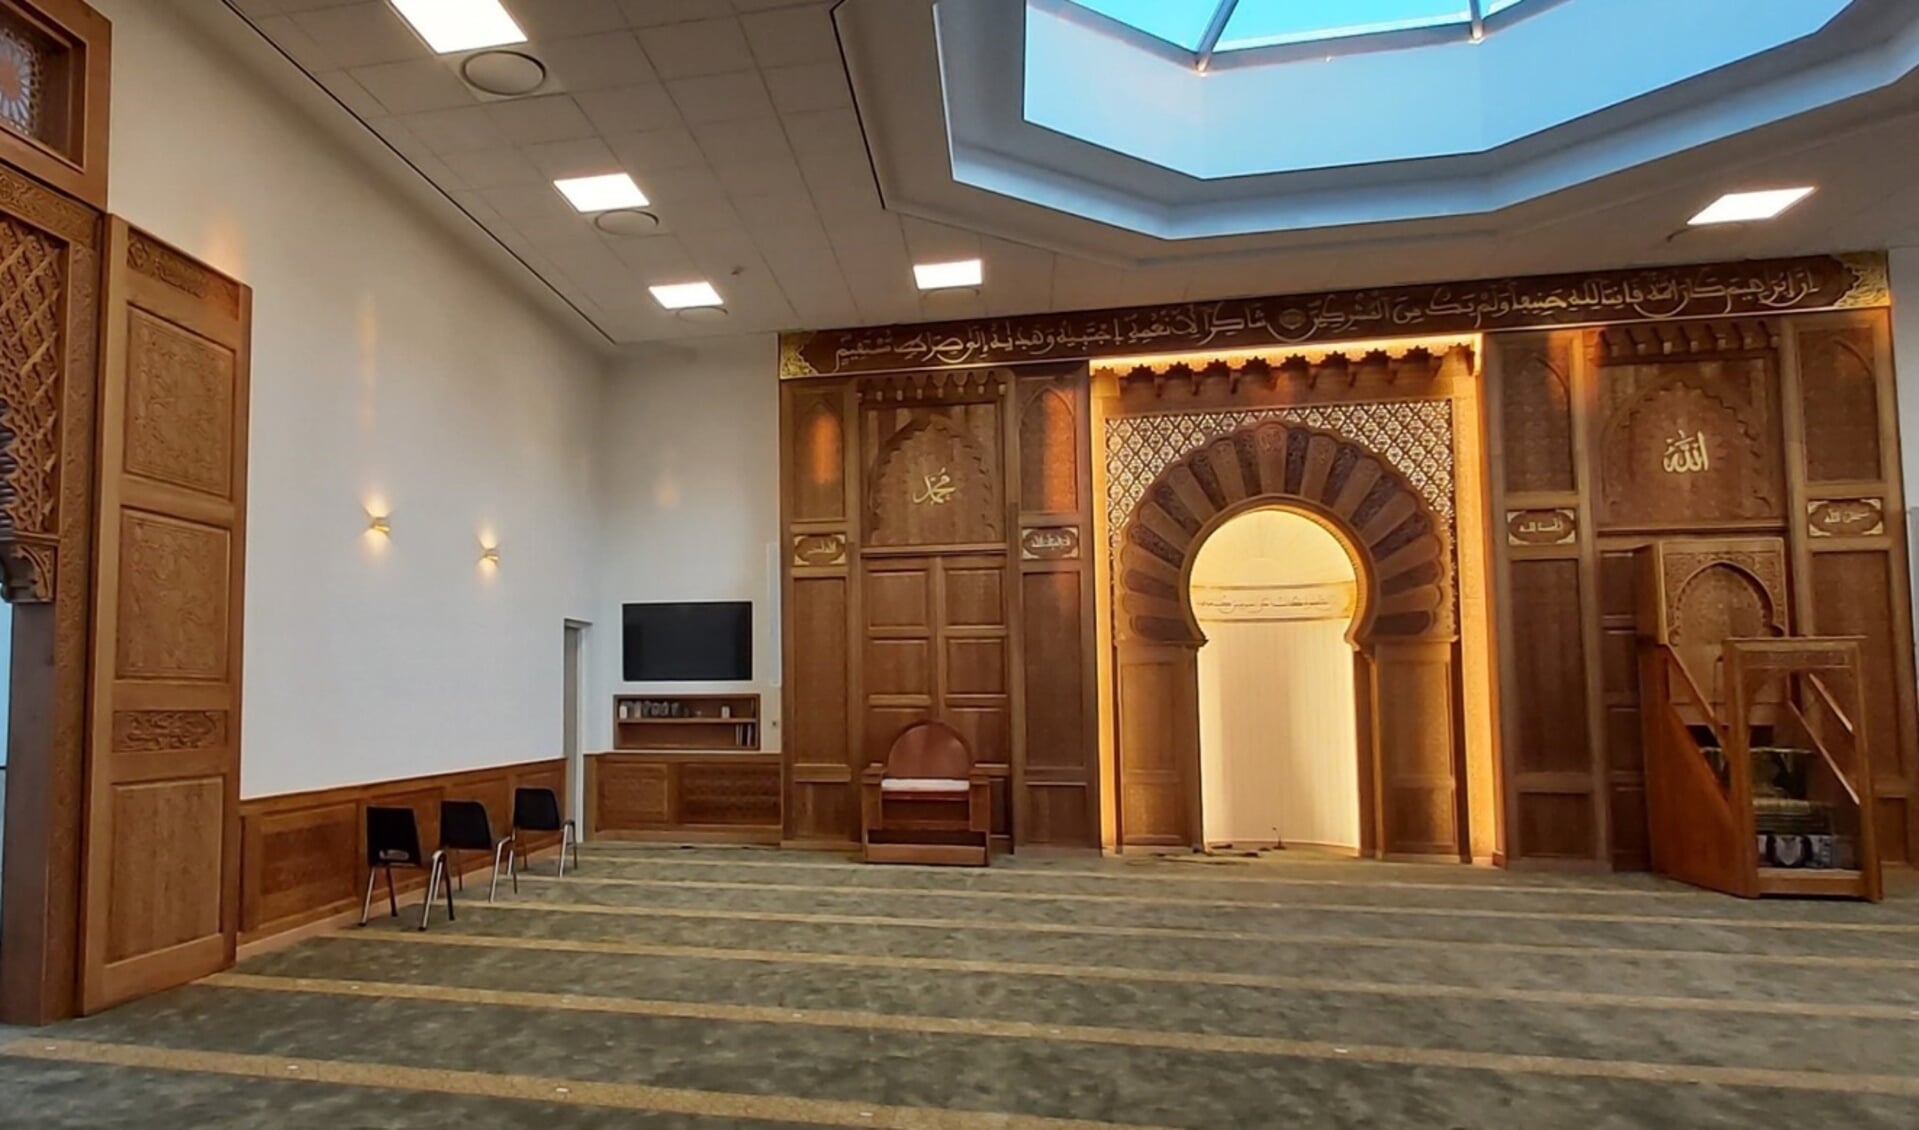 Tijdens de rondleidingen worden de bezoekers meegenomen naar de verschillende ruimtes van de moskee.